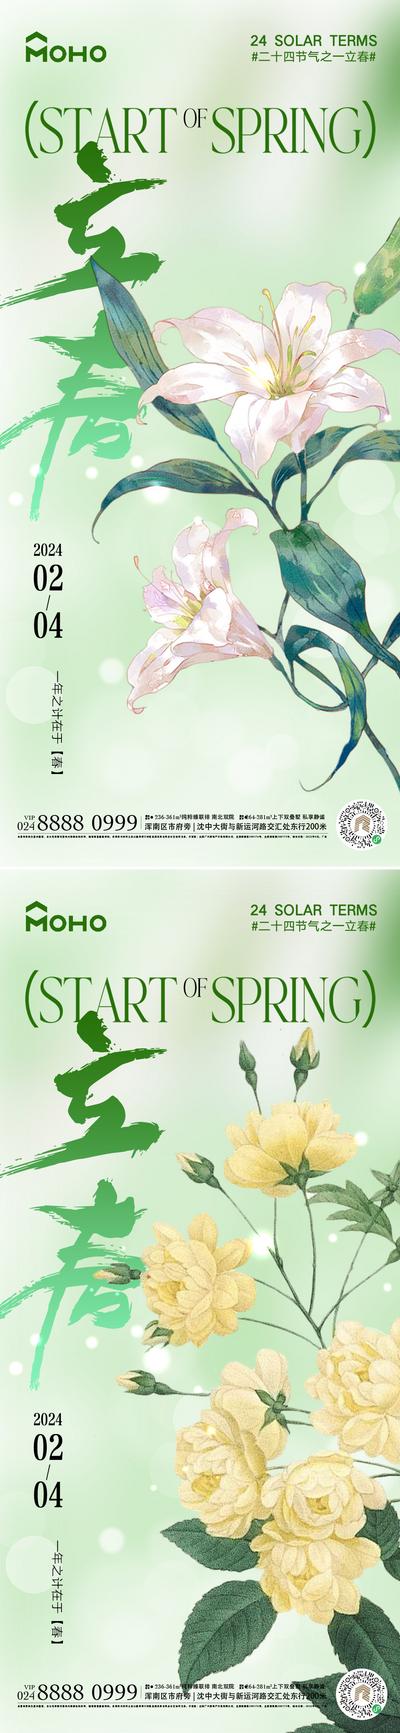 南门网 广告 海报 节气 立春 春天 春分 鲜花 二十四节气 生机 花 阳光 蝴蝶